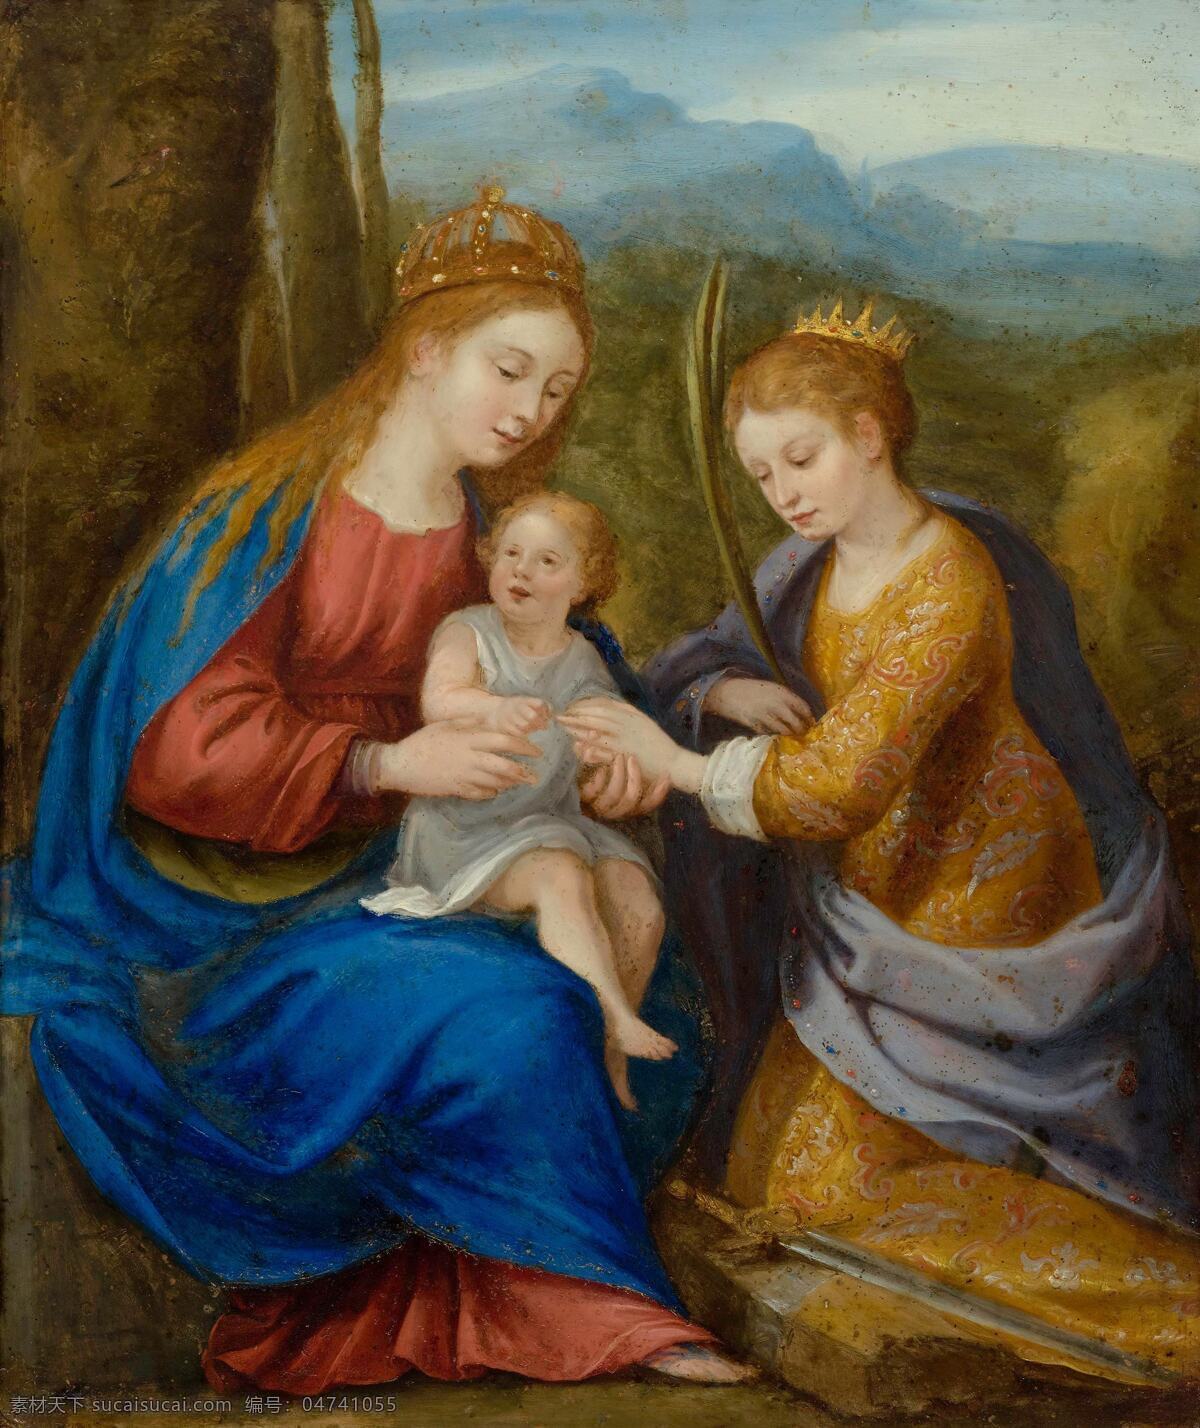 圣母与圣婴 圣经故事 圣玛丽娅 感应 上天灵气 涎育耶稣 古典油画 油画 文化艺术 绘画书法